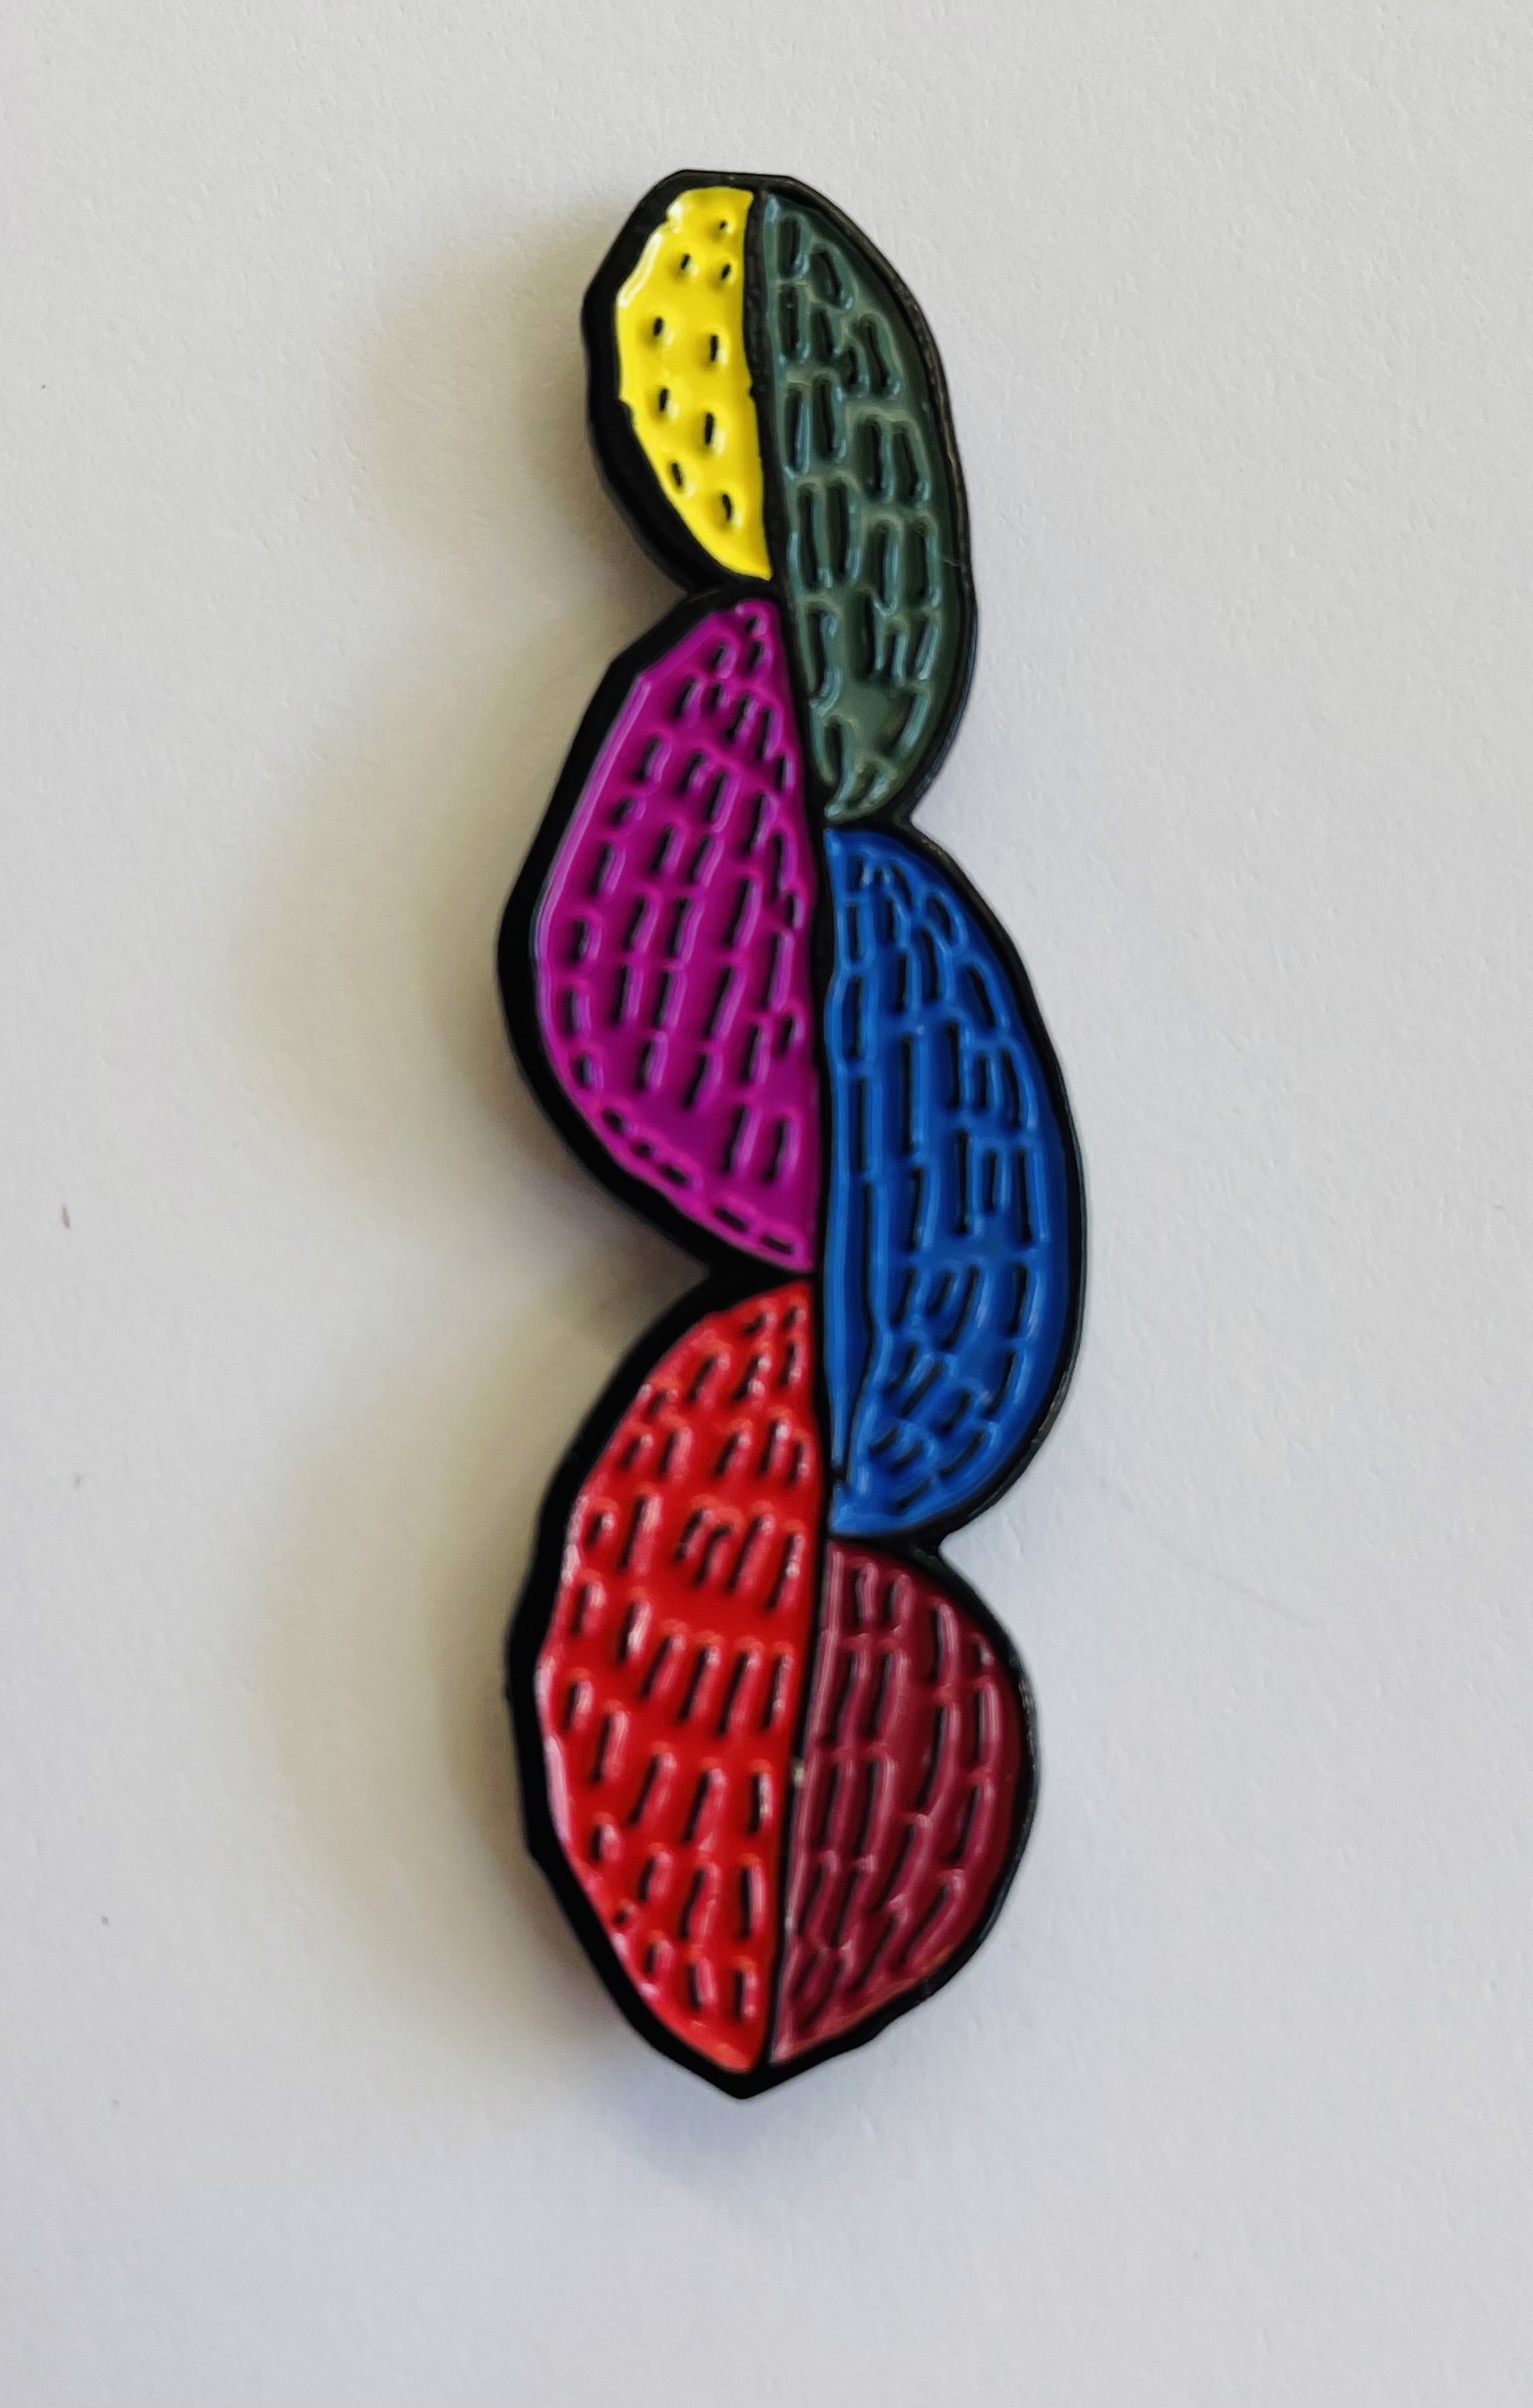 Enamel Pin - Tree (artwork by Eileen Schofield) 2" x 1/2" by Art Enables Merchandise